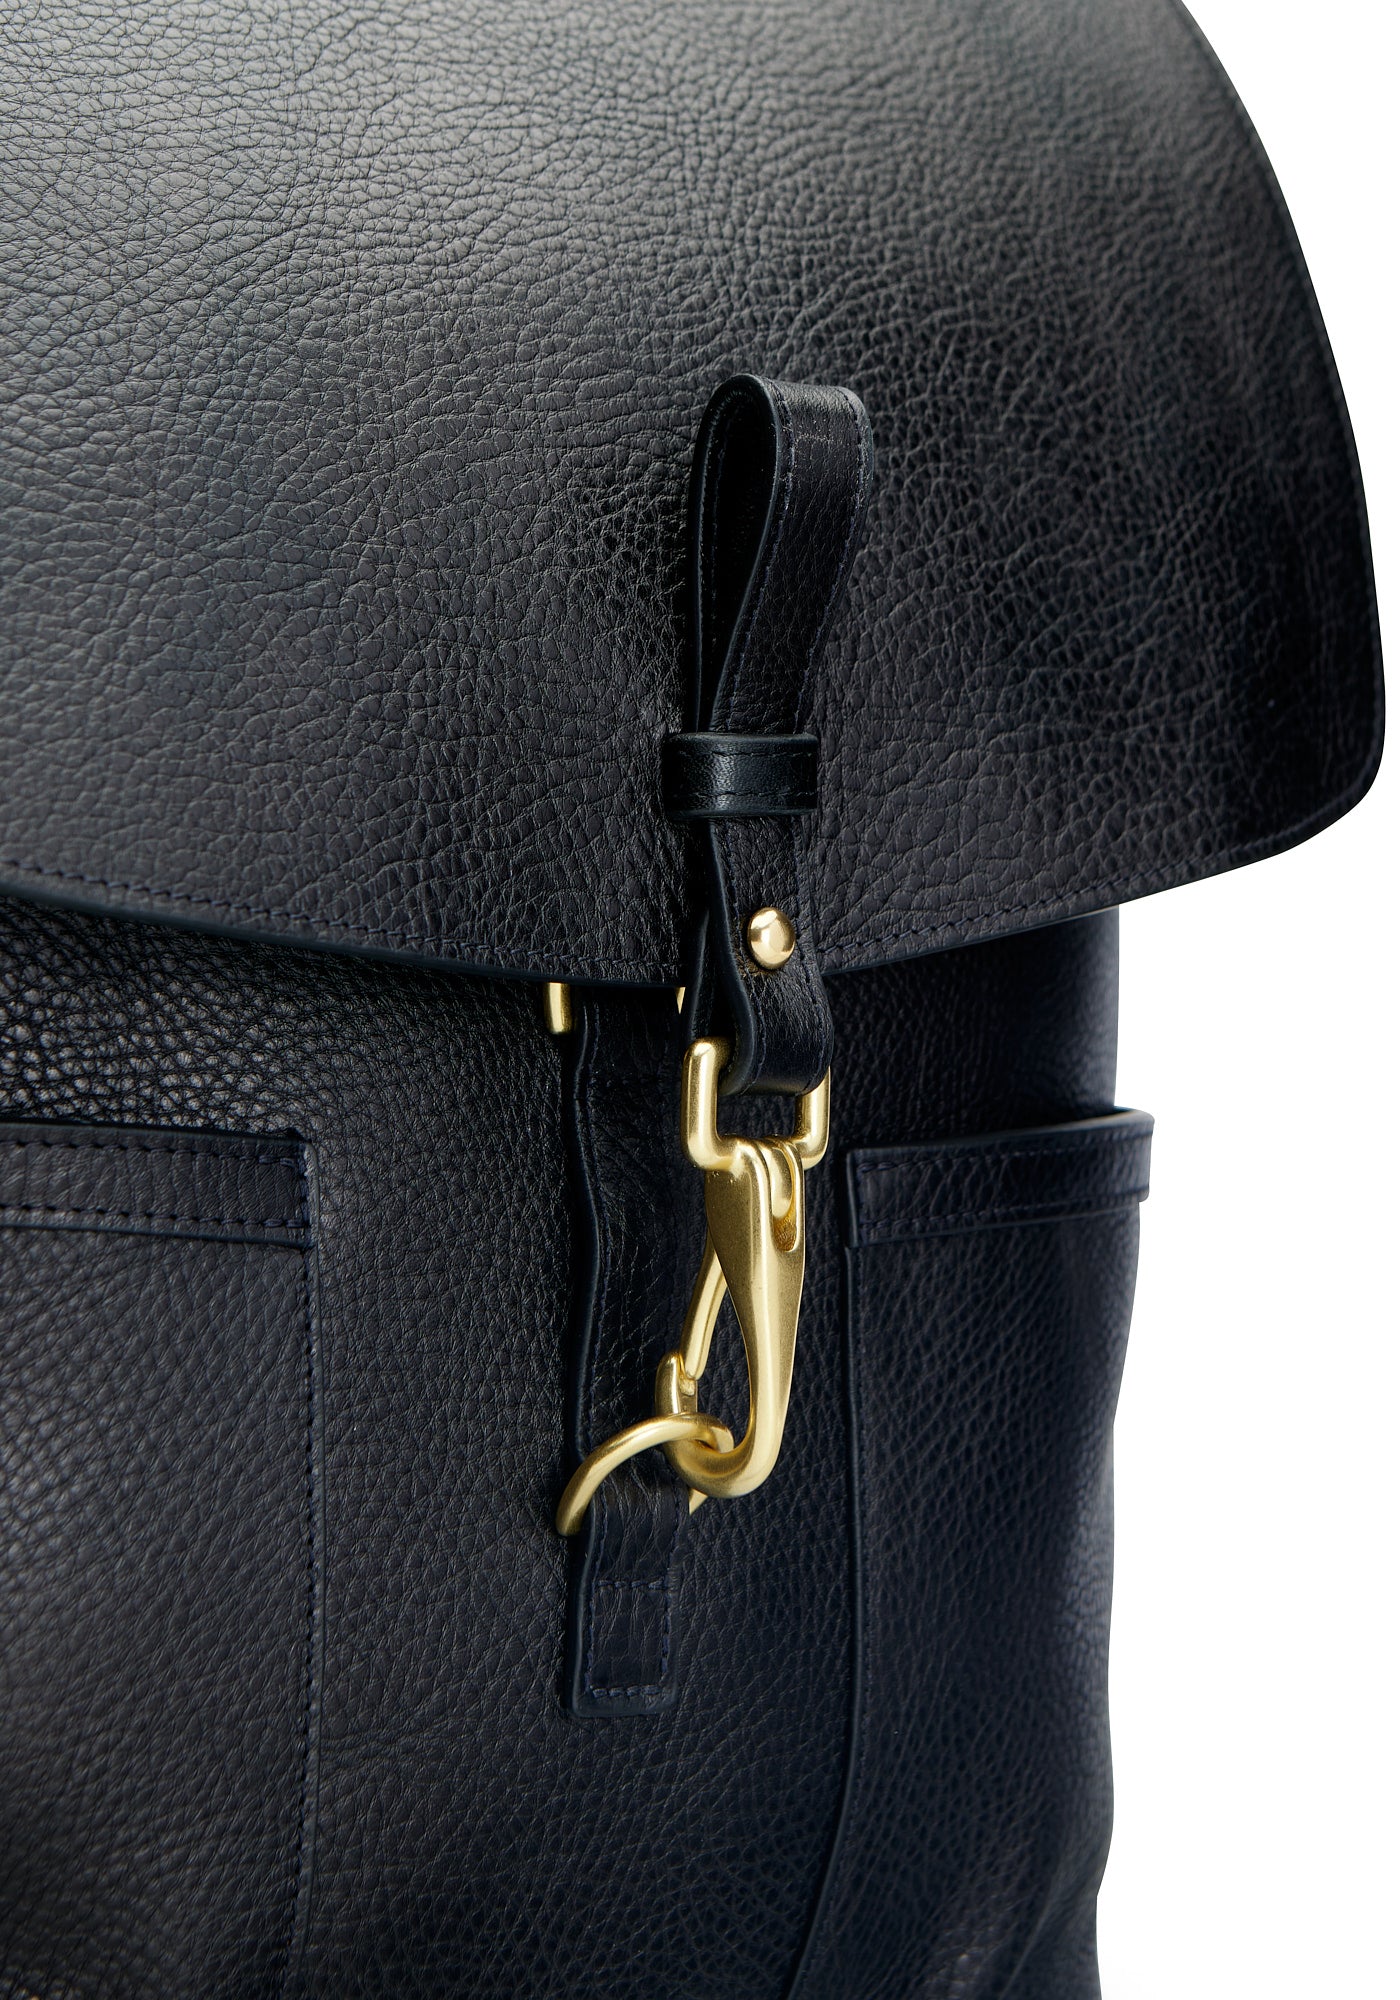 Hook of Leather No. 5 Knapsack Black